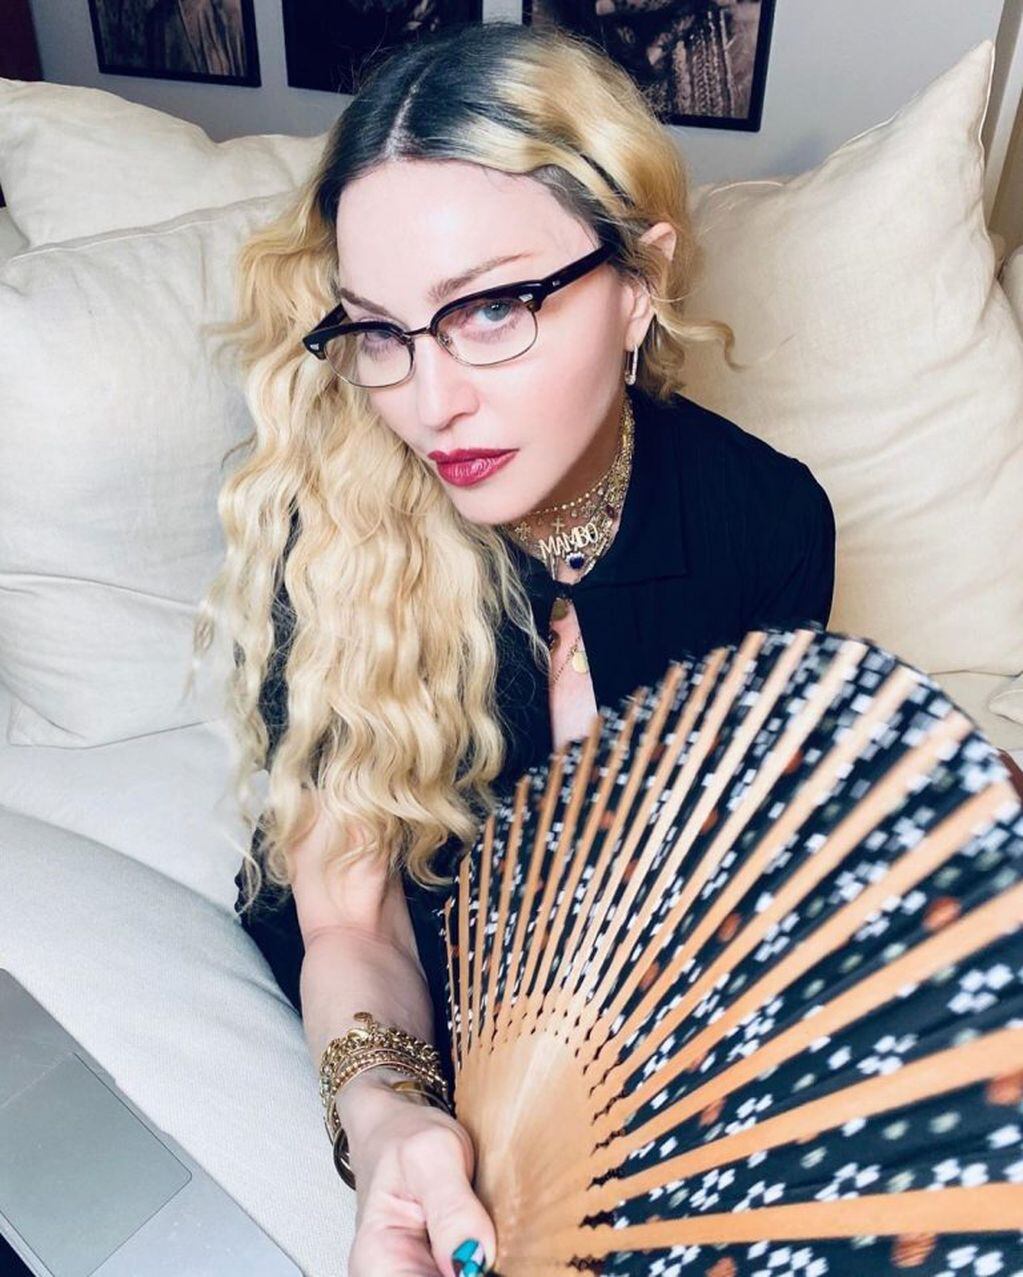 Madonna escribió junto a esta foto en su Instagram "Estás listo para la historia de mi vida?". (Foto: Instagram/@madonna)